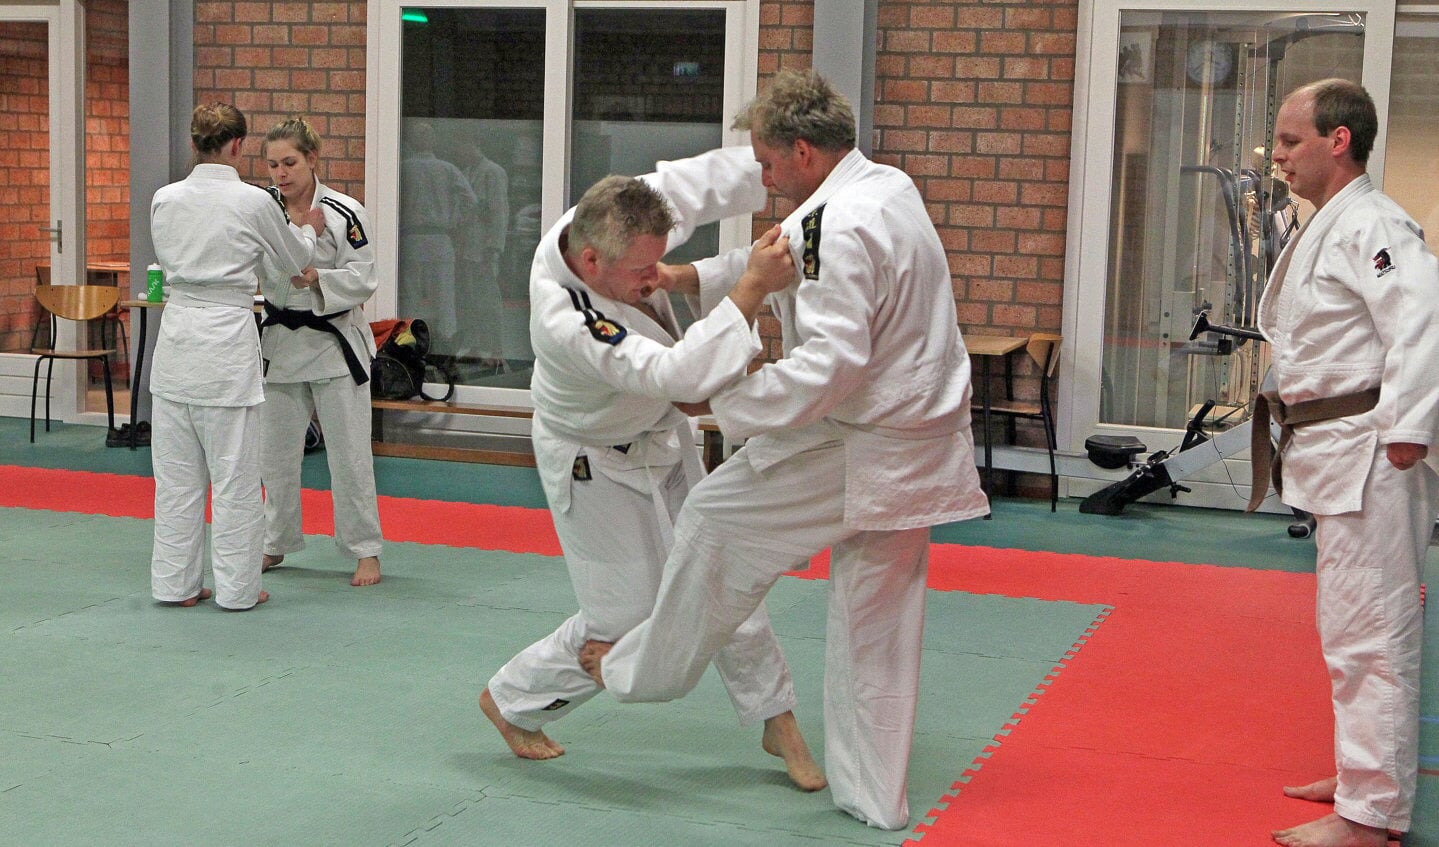 Judoka's bij Judovereniging Kaihatsu Oss. (Foto: Hans van der Poel)